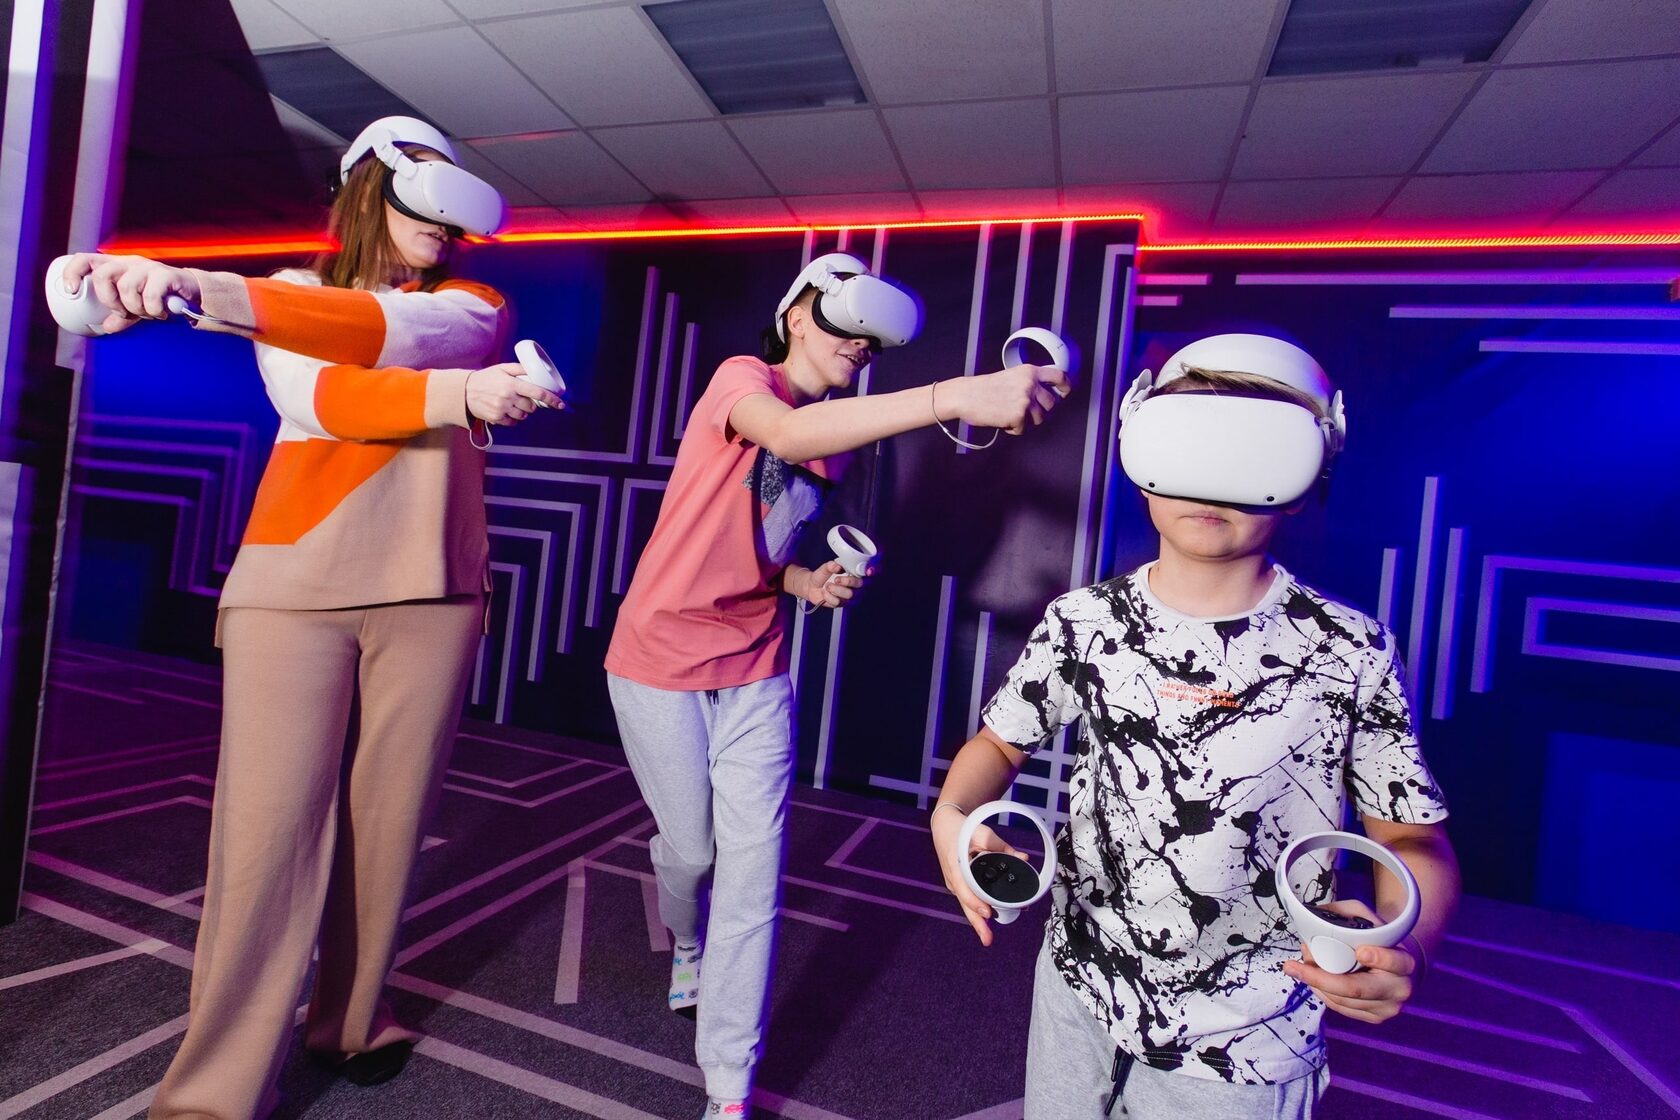 Игры для vr арены. Человек в виртуальной реальности. Арена виртуальной реальности. Человек в VR шлеме. VR игры с друзьями.